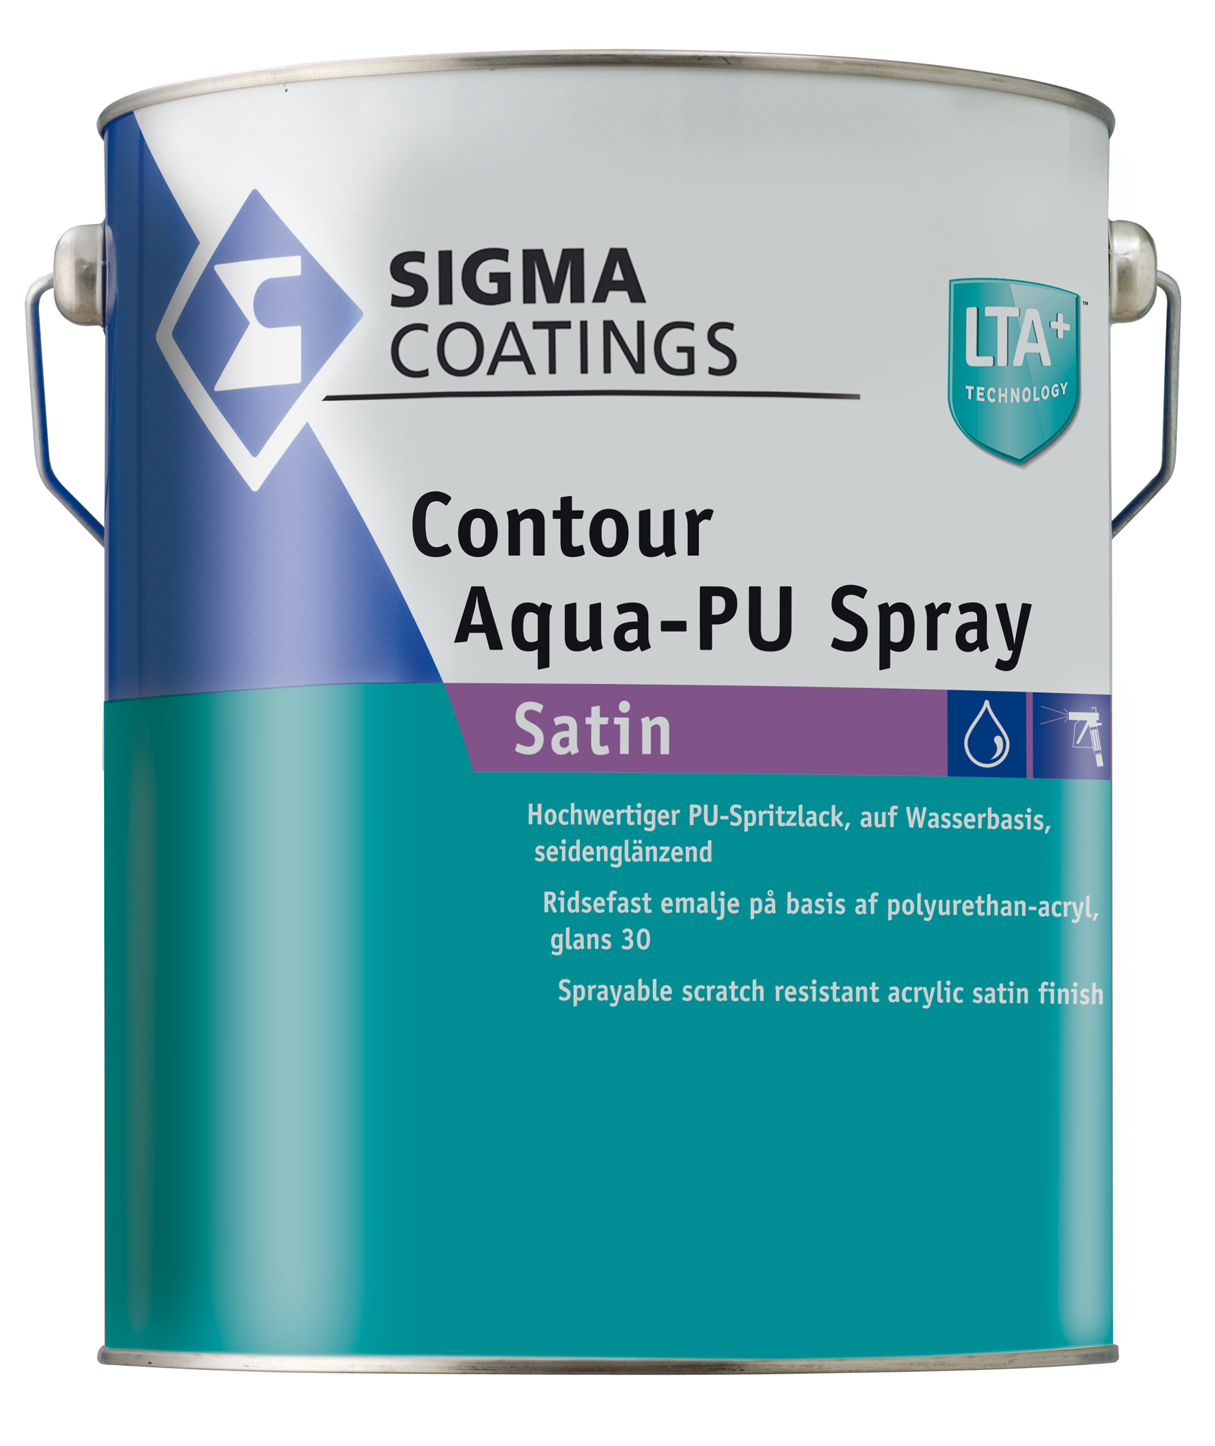 Contour Aqua-PU Spray Satin